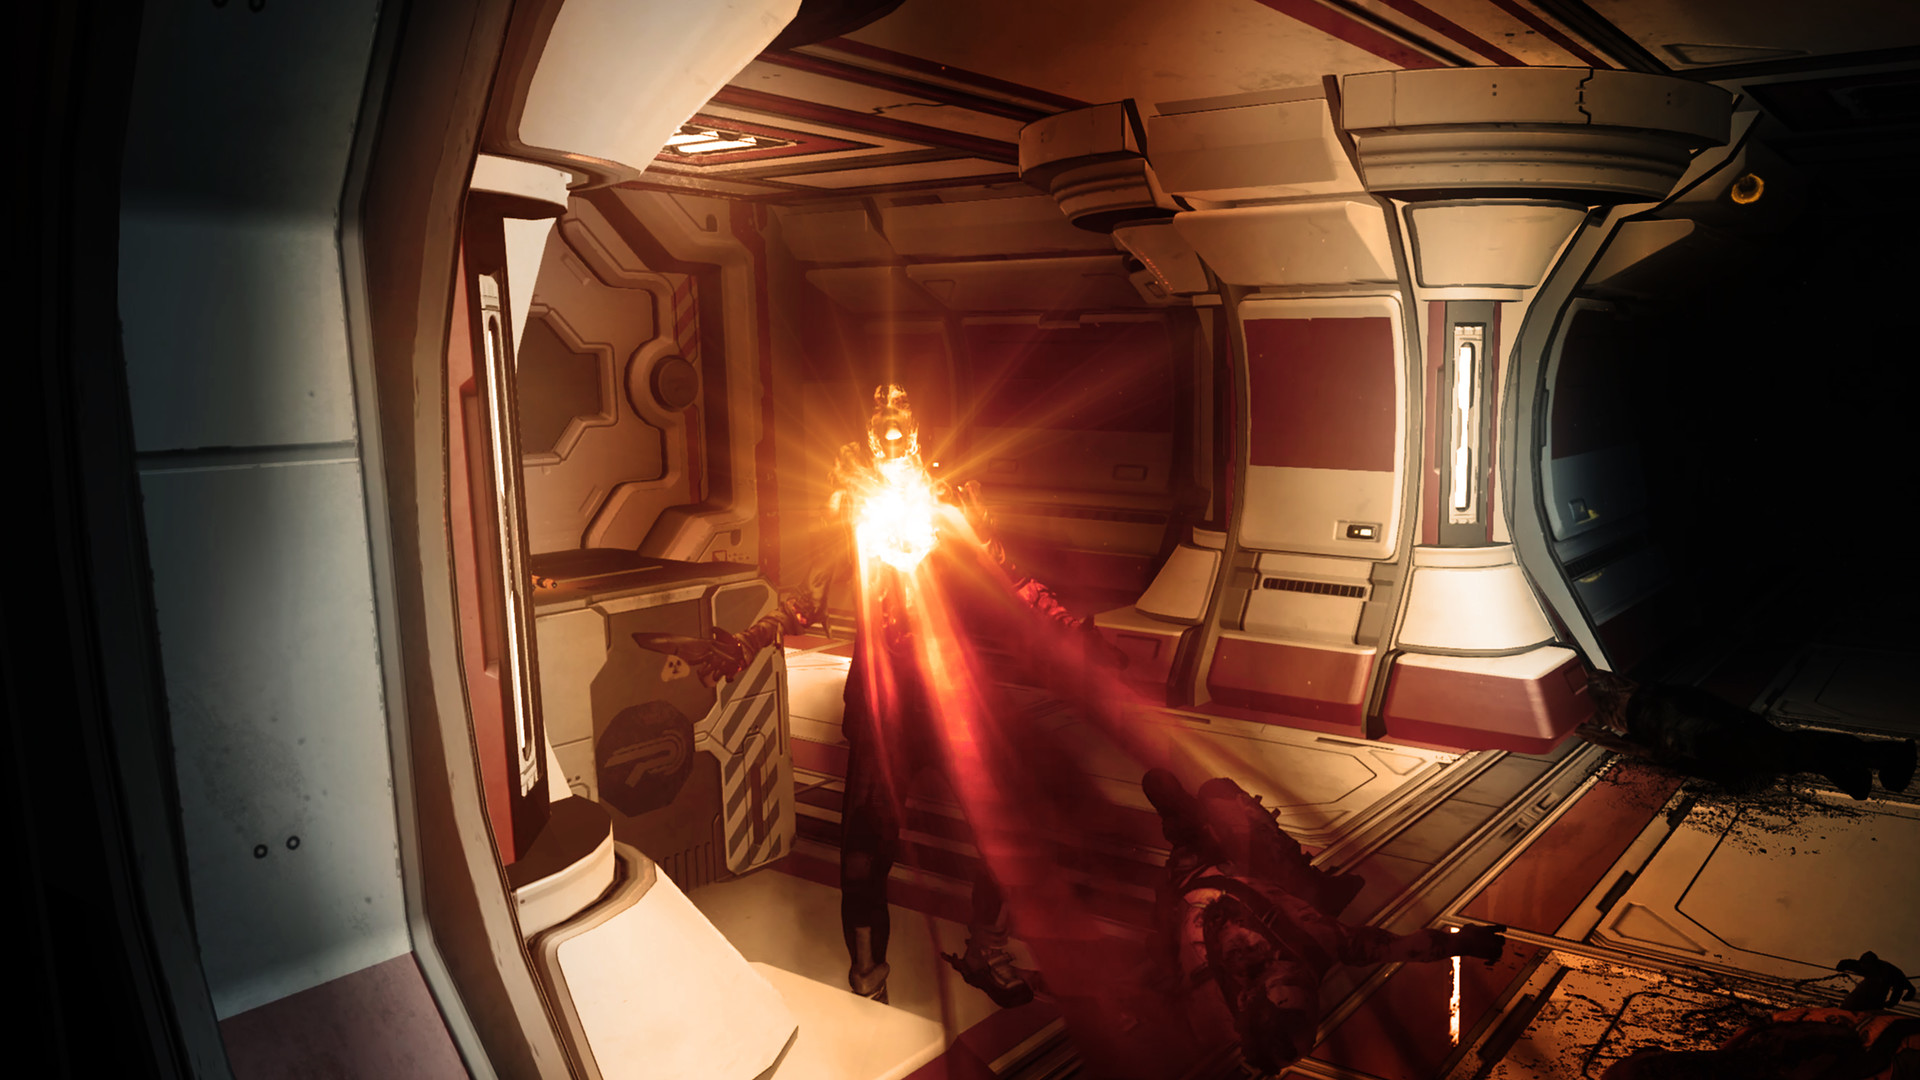 科幻恐怖FPS《无尽轮回》将于5月21日发售 登陆全平台